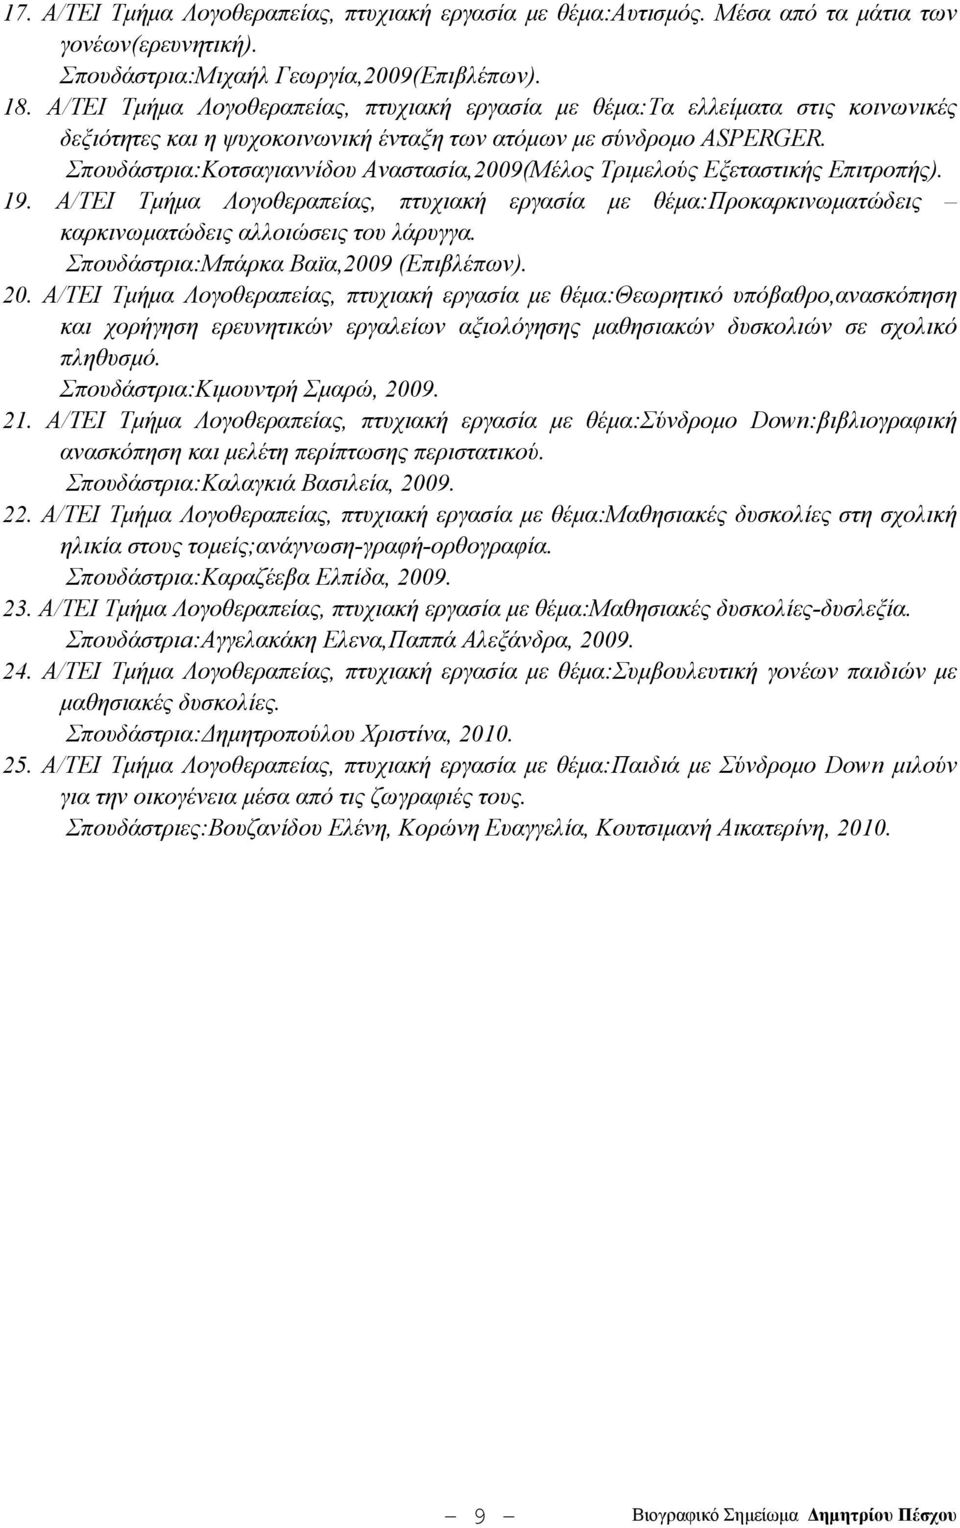 Σπουδάστρια:Κοτσαγιαννίδου Αναστασία,2009(Μέλος Τριμελούς Εξεταστικής Επιτροπής). 19. Α/ΤΕΙ Τμήμα Λογοθεραπείας, πτυχιακή εργασία με θέμα:προκαρκινωματώδεις καρκινωματώδεις αλλοιώσεις του λάρυγγα.